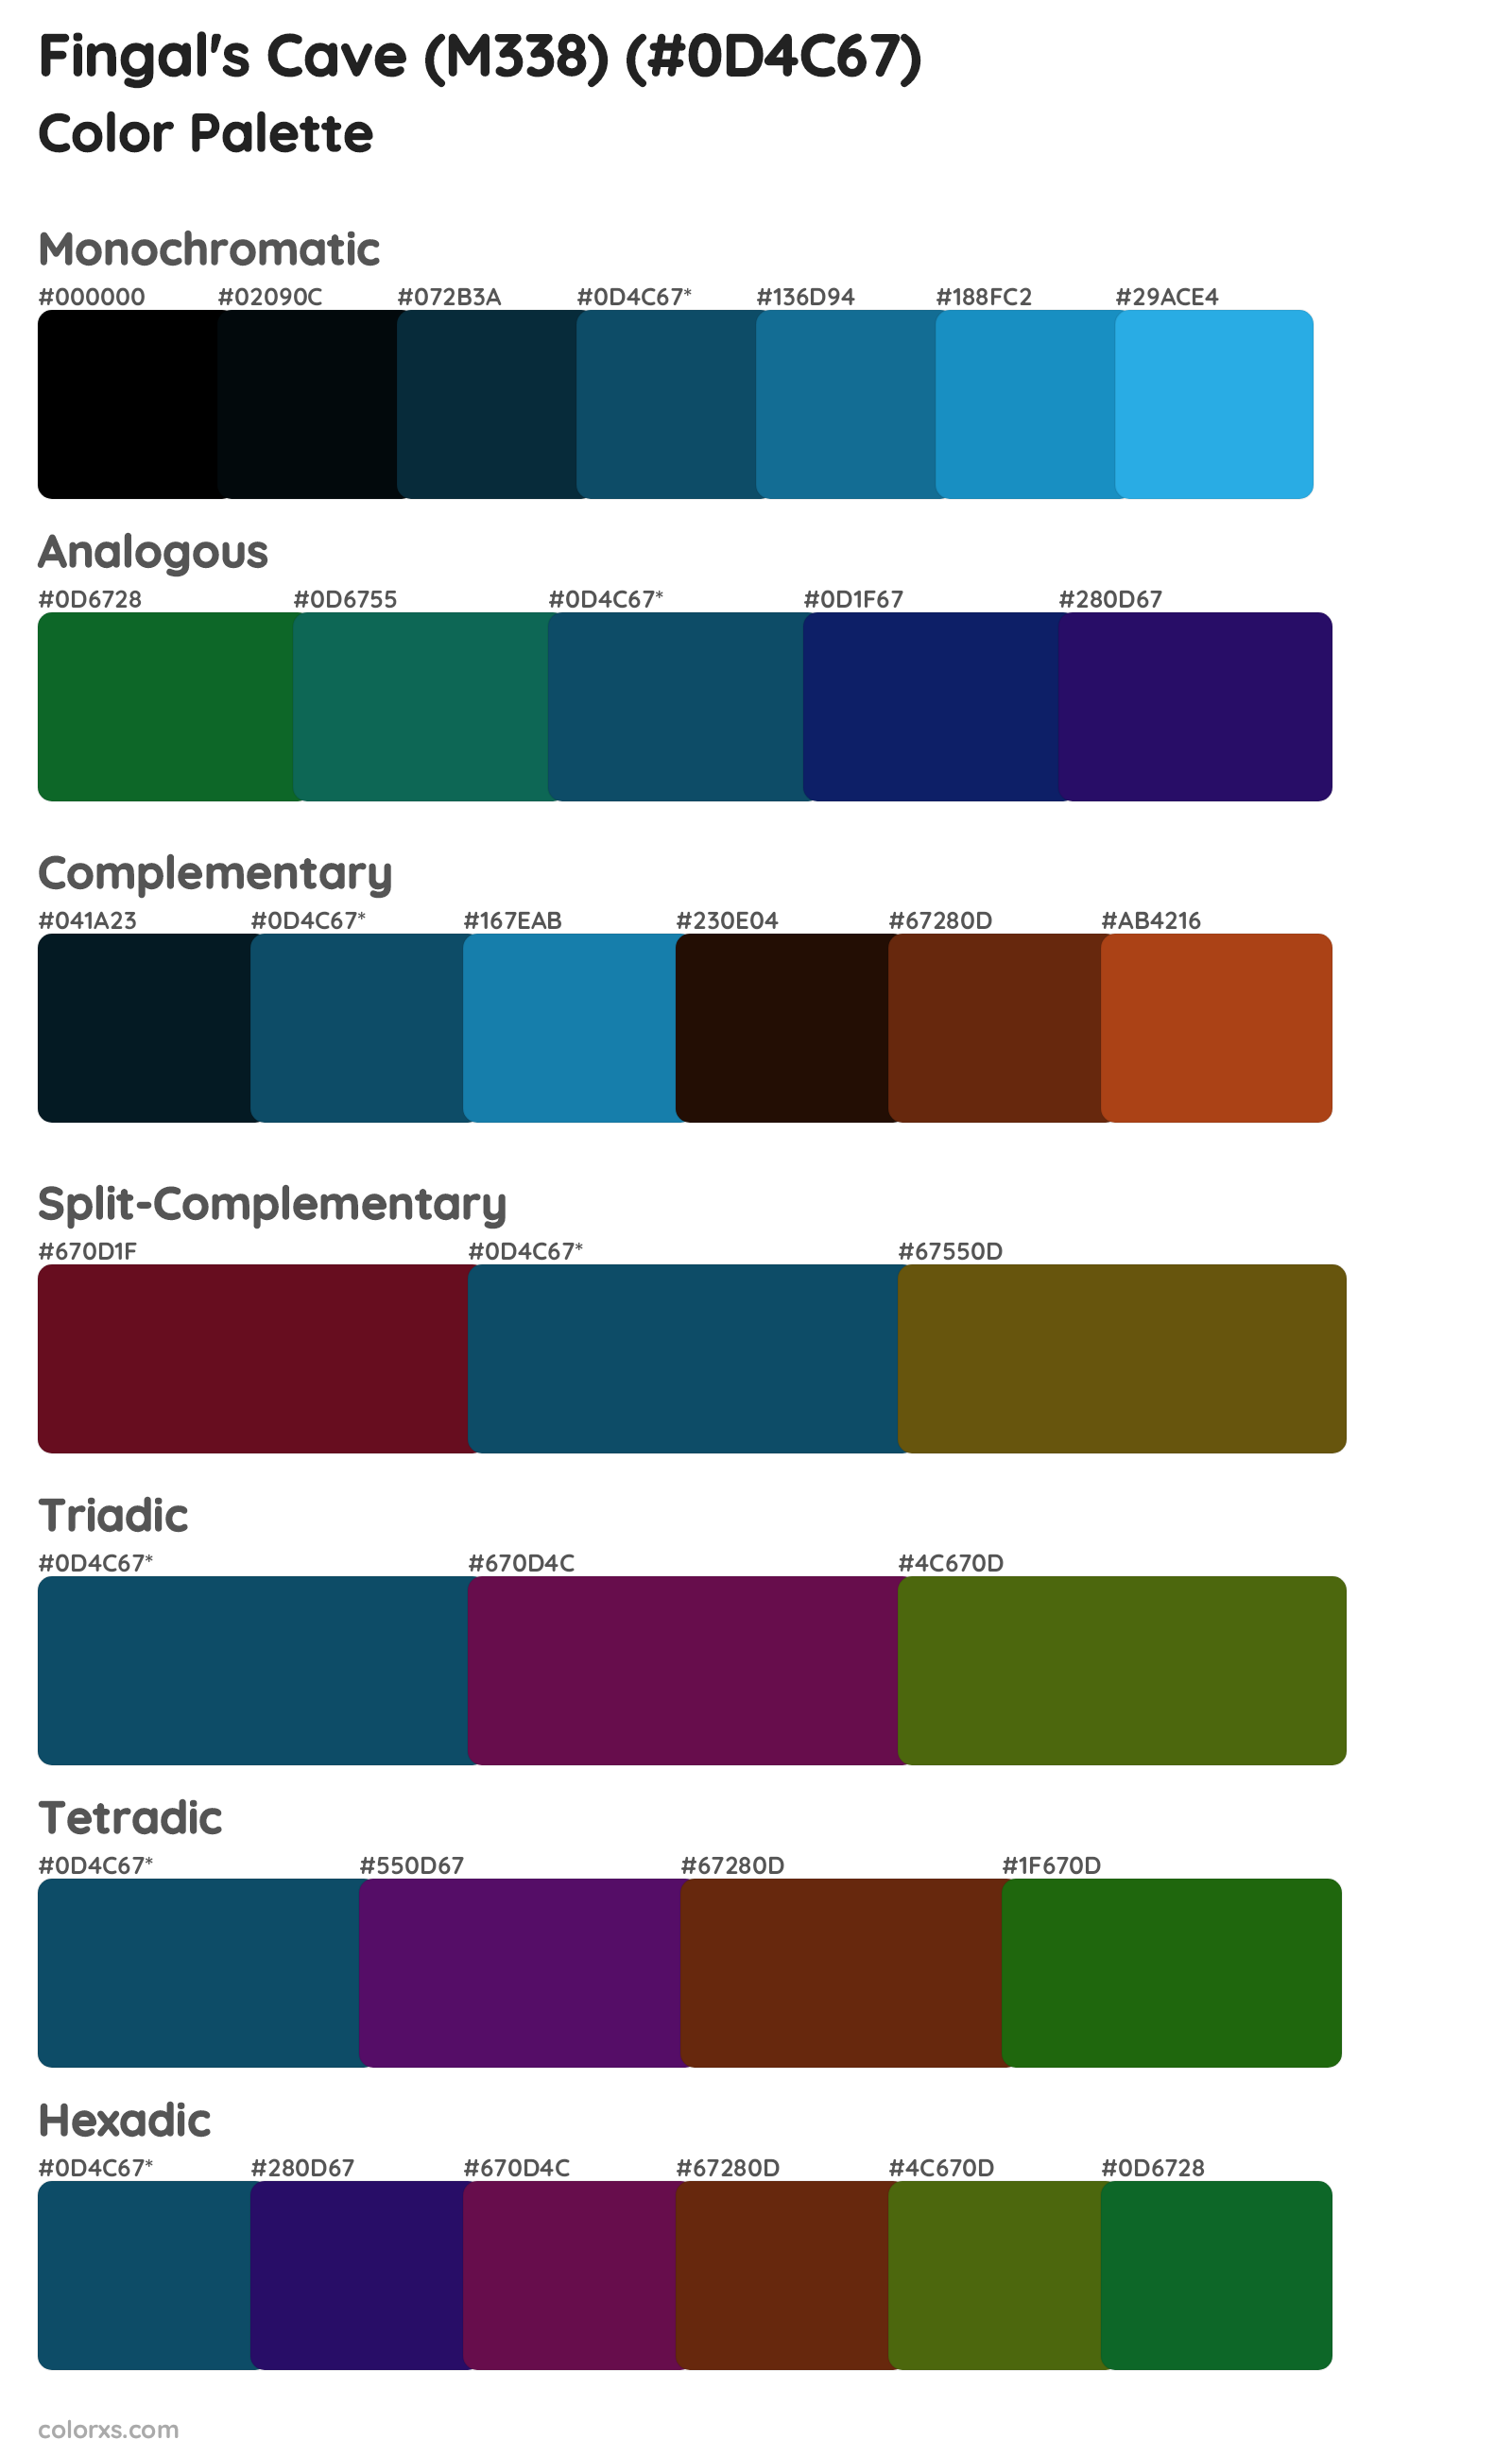 Fingal's Cave (M338) Color Scheme Palettes